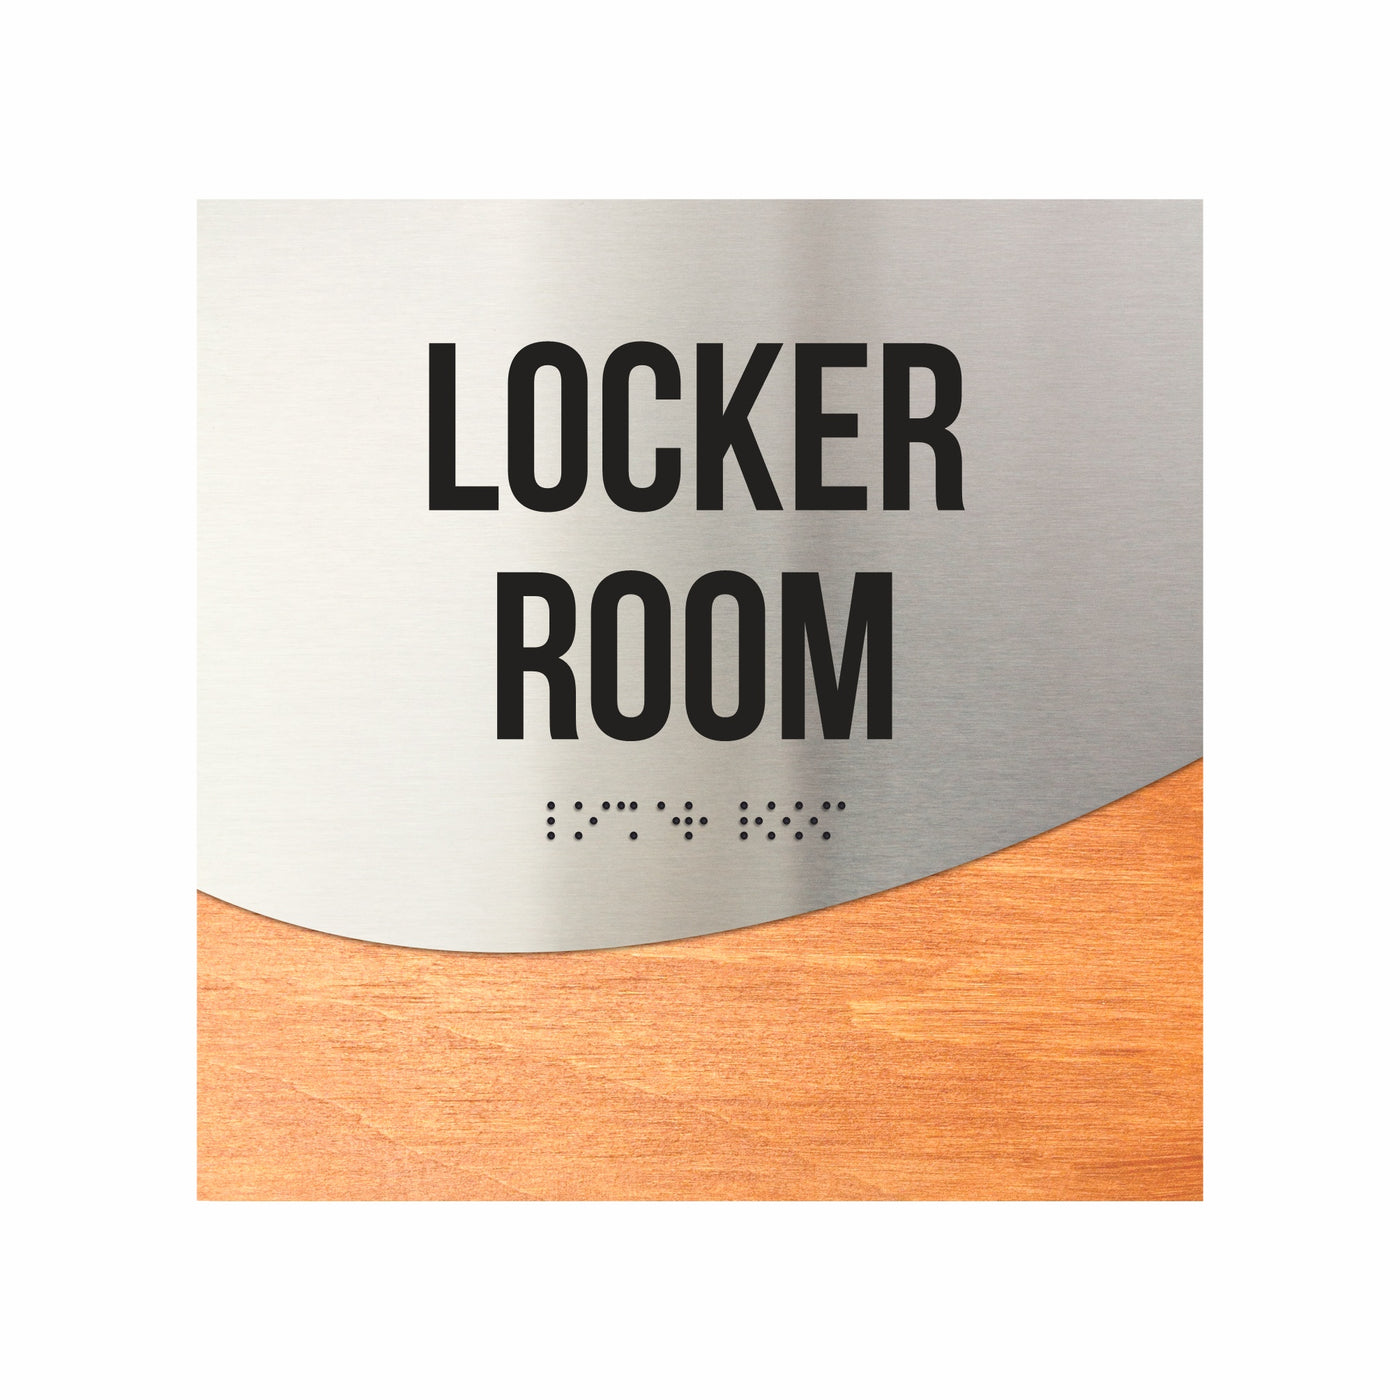 Locker Room Door Sign - Stainless Steel & Wood Door Plate "Jure" Design